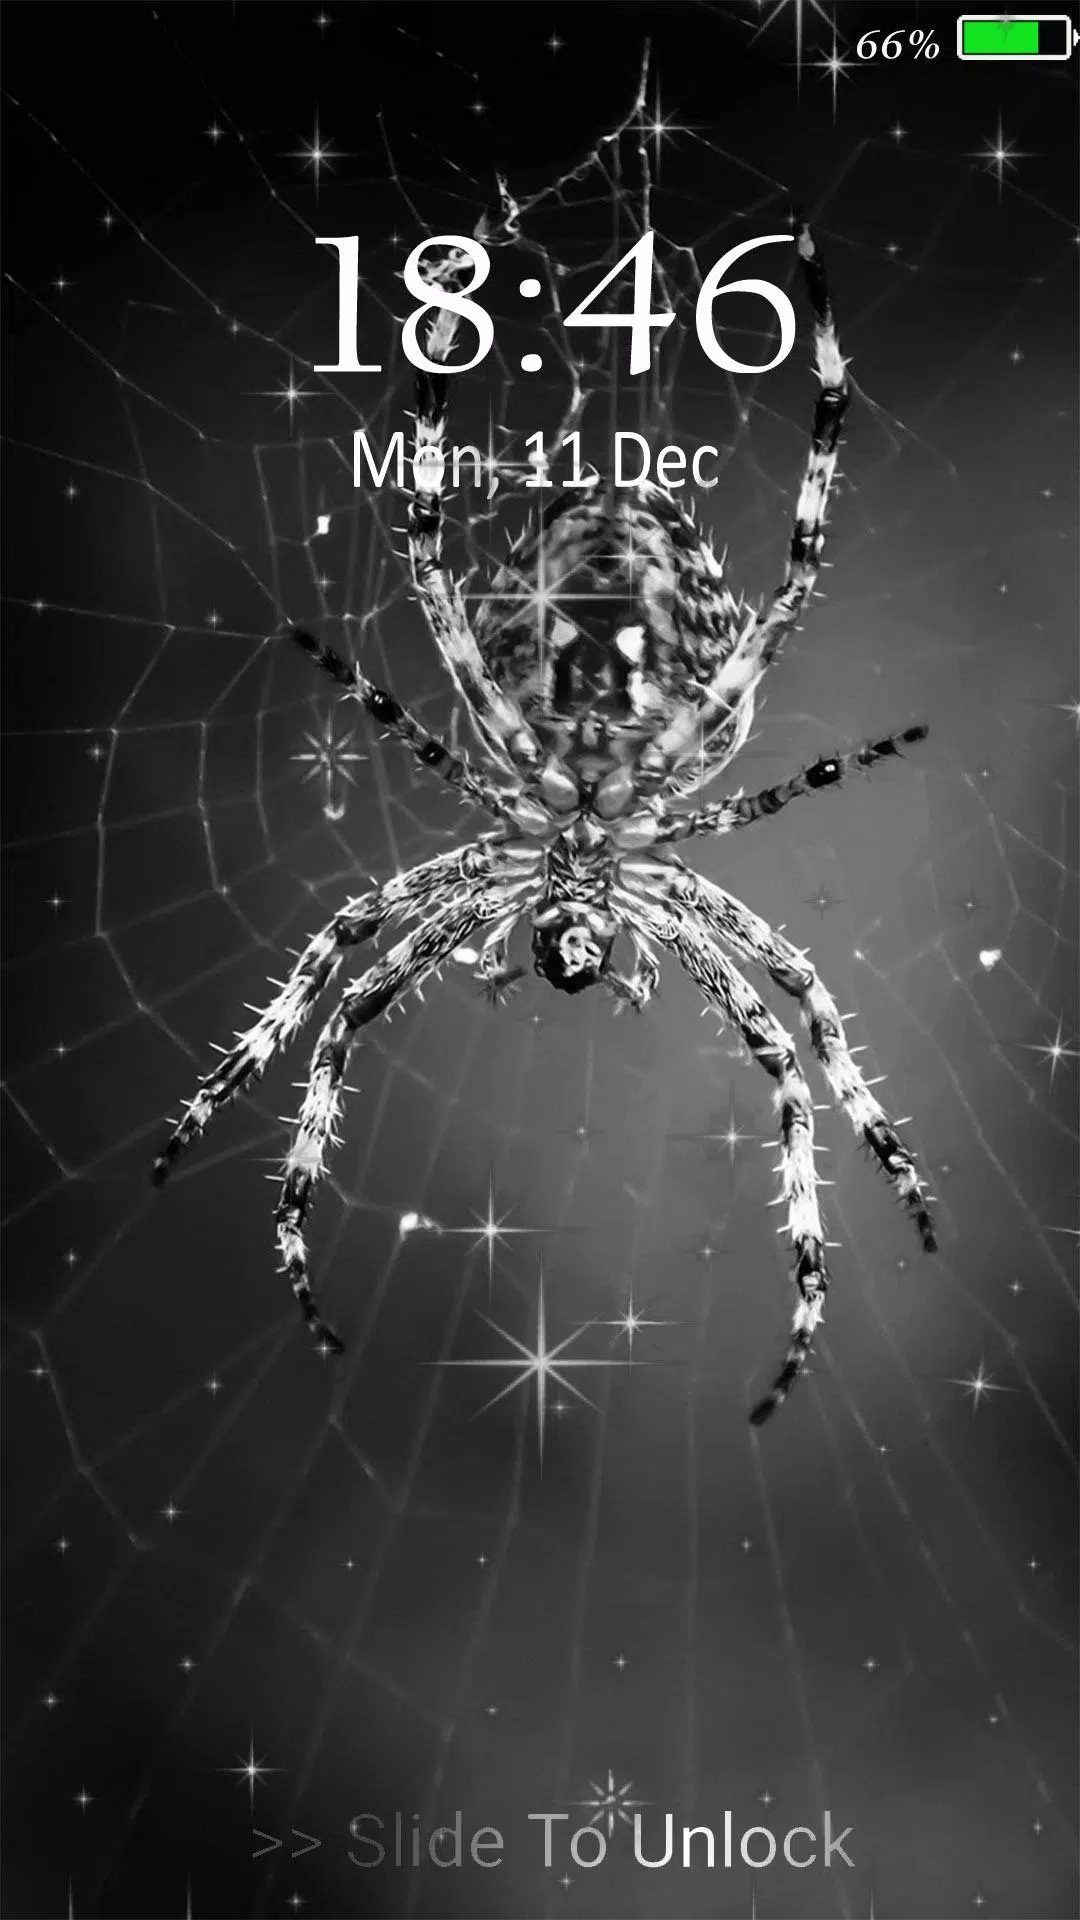 Spider live wallpaper: Tạo sự thú vị cho smartphone của bạn với hình nền \'spider live\' đẹp mắt và sinh động. Những con nhện sẽ tạo cảm giác thật sự khiếp sợ nhưng cũng thật đẹp mắt khi di chuyển trên màn hình điện thoại. Tận hưởng thế giới của những con nhện với hình nền này.